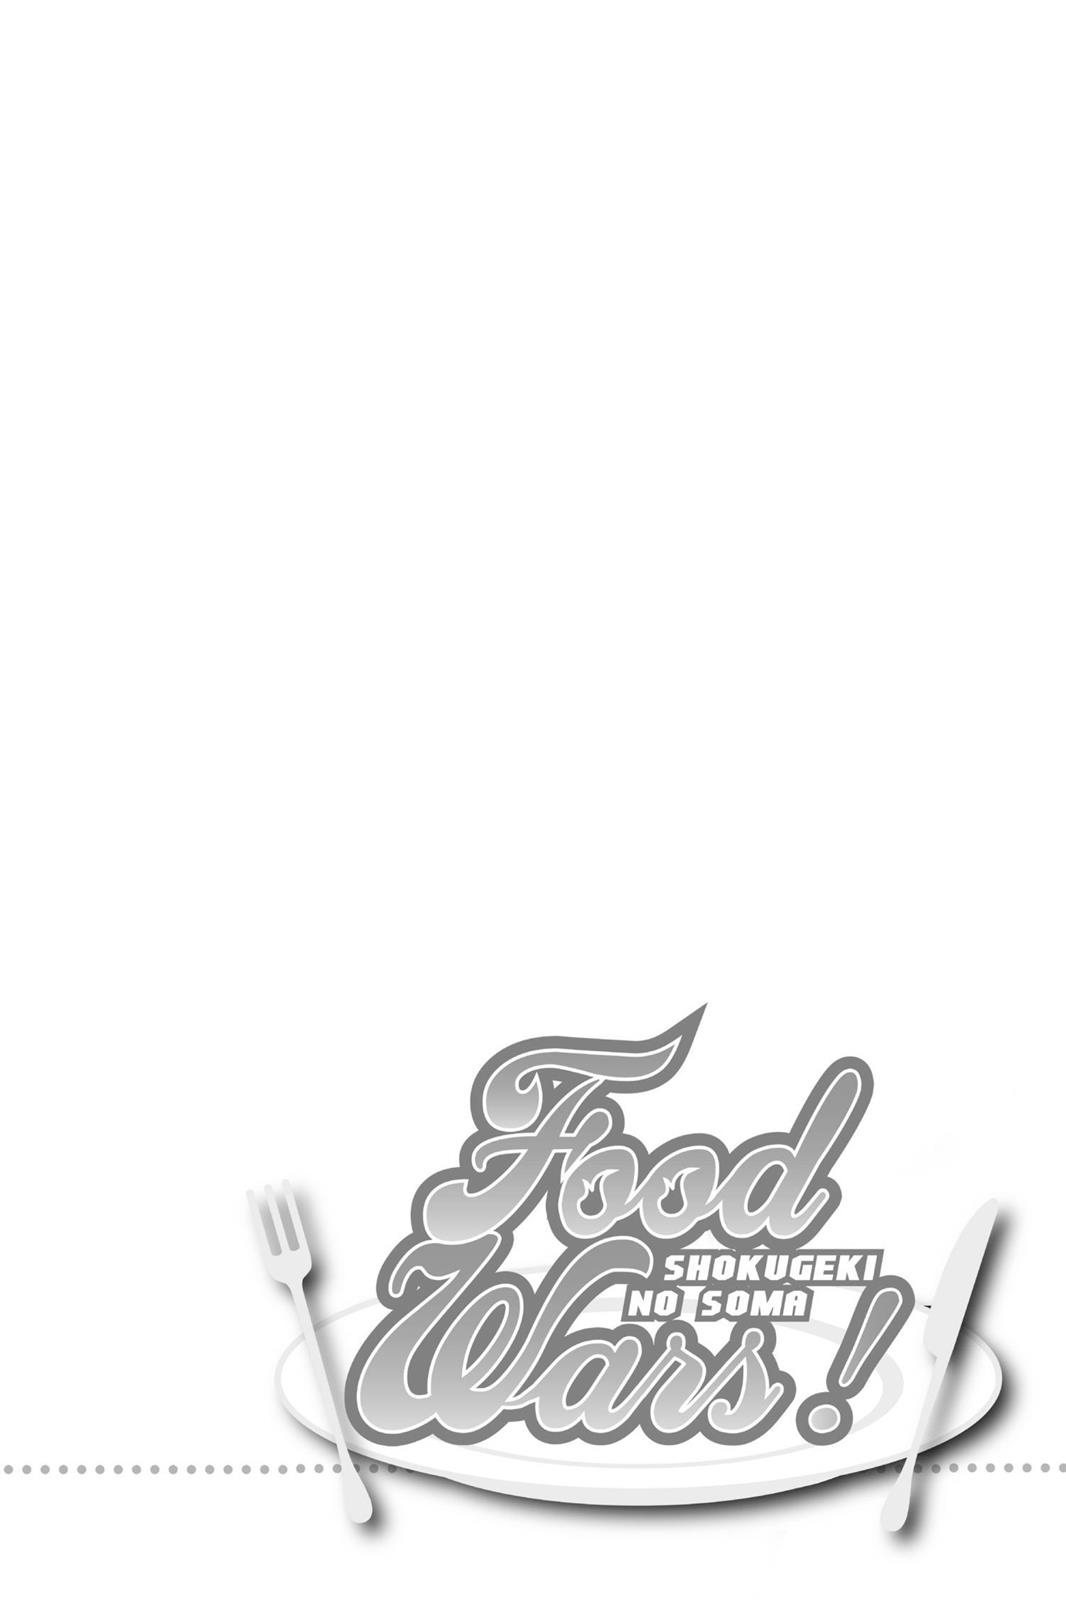 shokugeki no soma, read shokugeki no soma, read shokugeki no soma manga, read food wars, read food wars manga, food wars manga, food wars manga online, food wars!: shokugeki no soma season 1 episode 1, food wars!: shokugeki no soma season 3 episode 1, urara food wars, shokugeki no soma main heroine, food wars food, food wars volume 1, shokugeki no soma volume 26, food wars characters elite ten, food wars characters male, food wars erina, food wars megumi, rindō kobayashi, kojirō shinomiya, shun ibusaki, food wars sōma yukihira, food wars season 2 myanimelist, tadokoro san mal, erina nakiri mal, shokugeki no souma: ni no sara ova, ai kayano mal, food wars mla, food wars male characters, alice nakiri, food wars best chefs, best food wars characters,